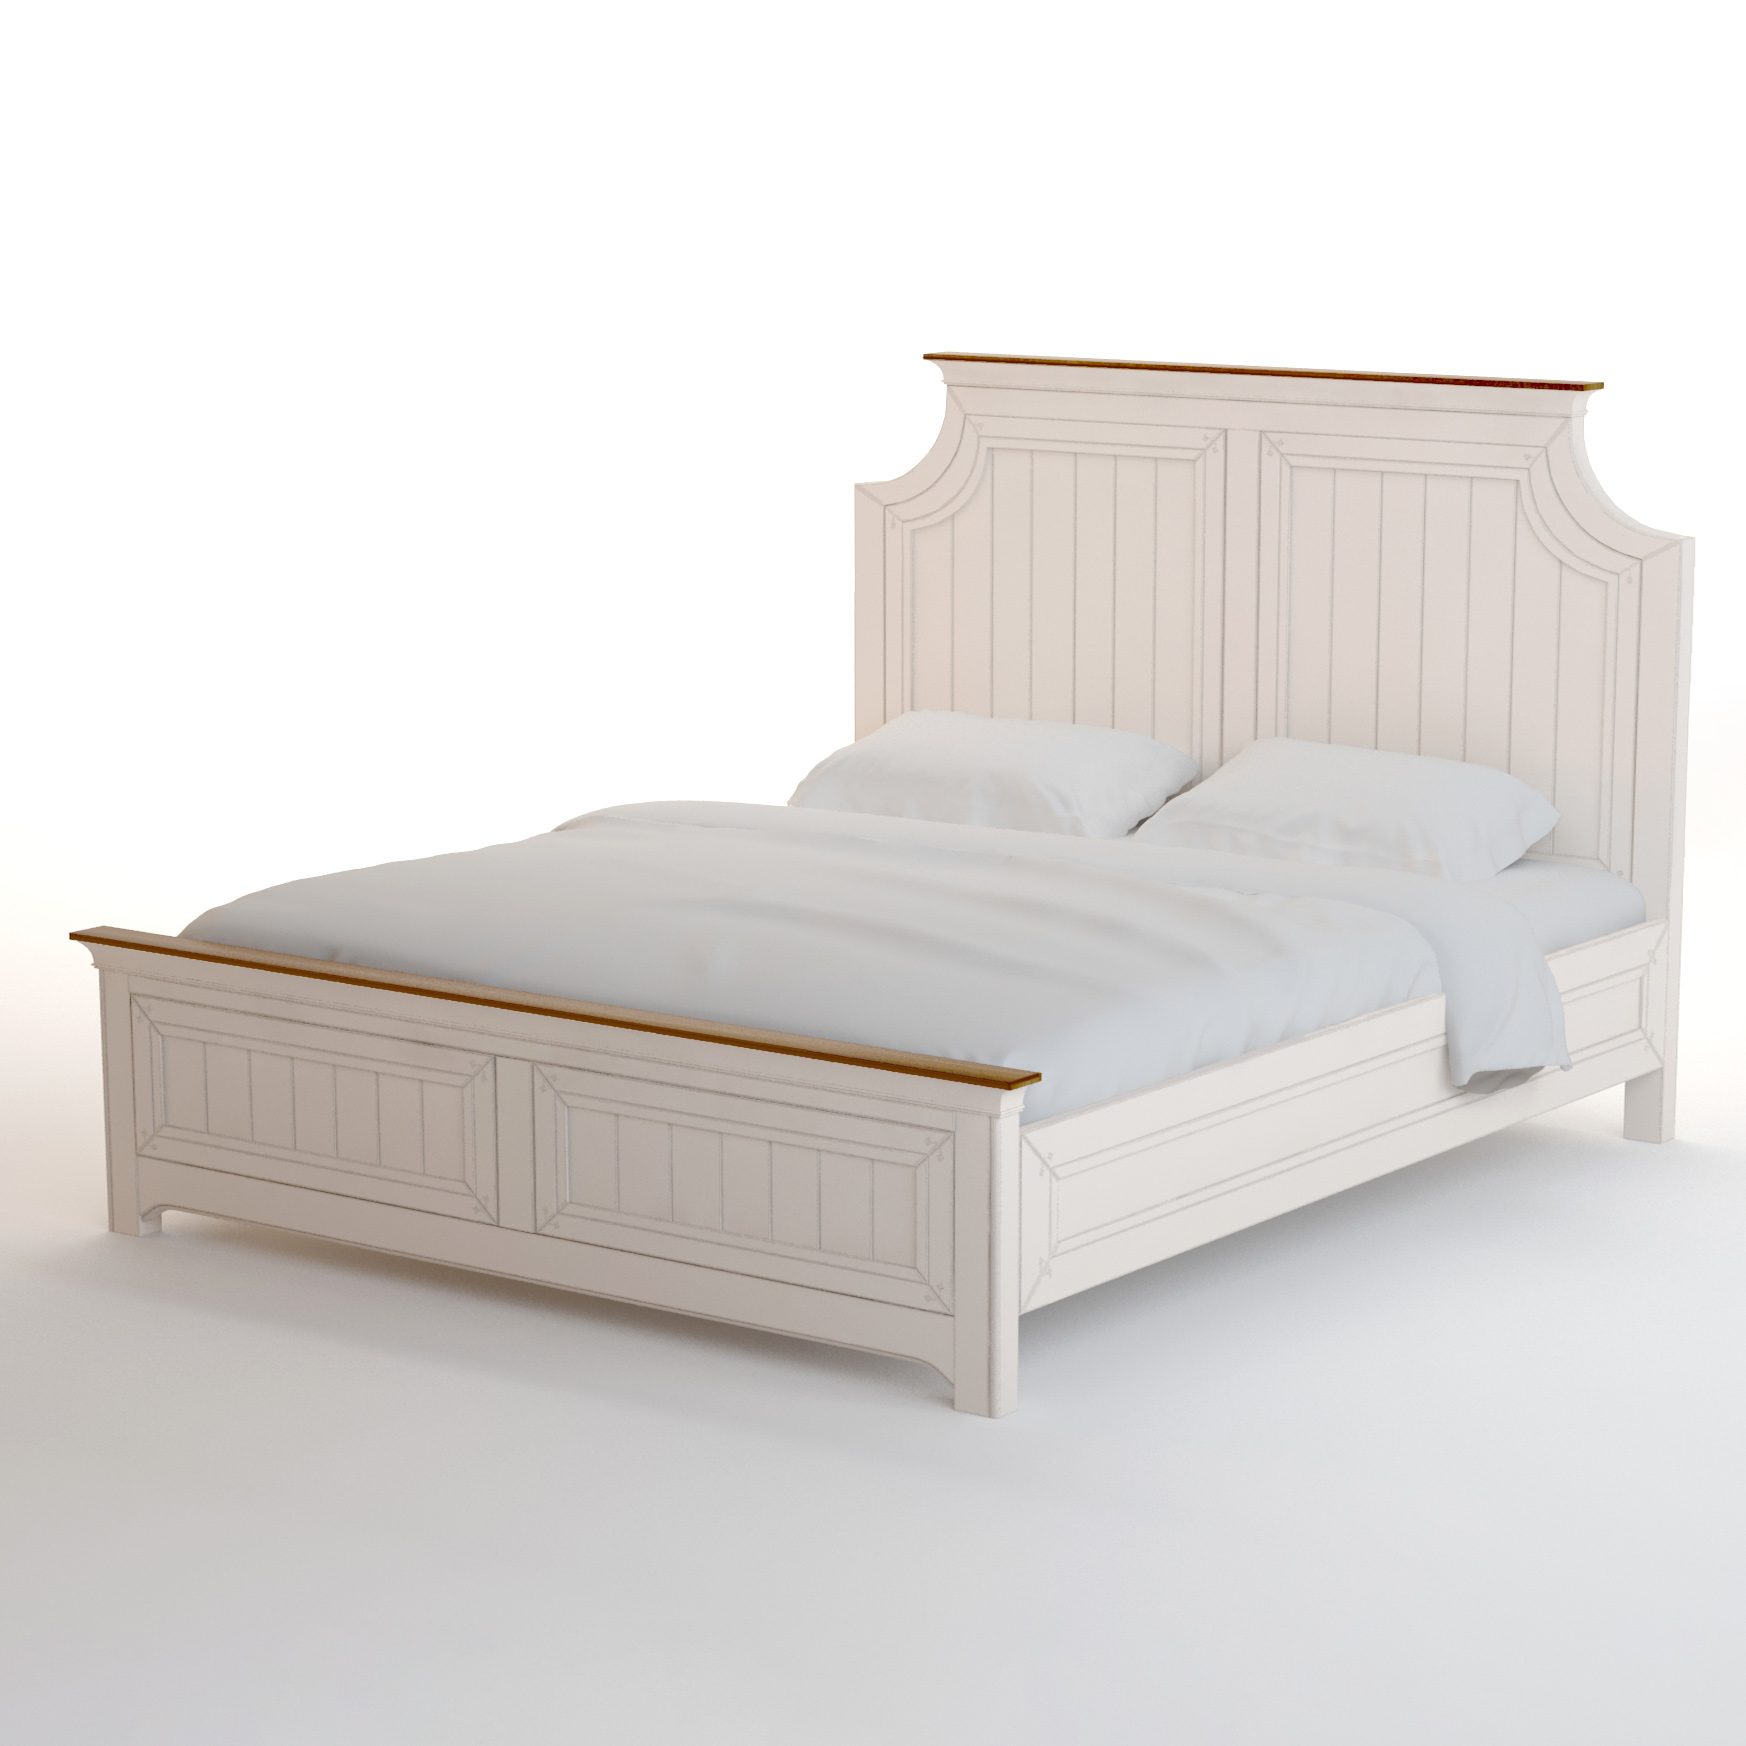 Кровать Этажерка Olivia 180*200 GA3001/18ETG/C, цвет бежевый, размер 180х200 см - фото 1